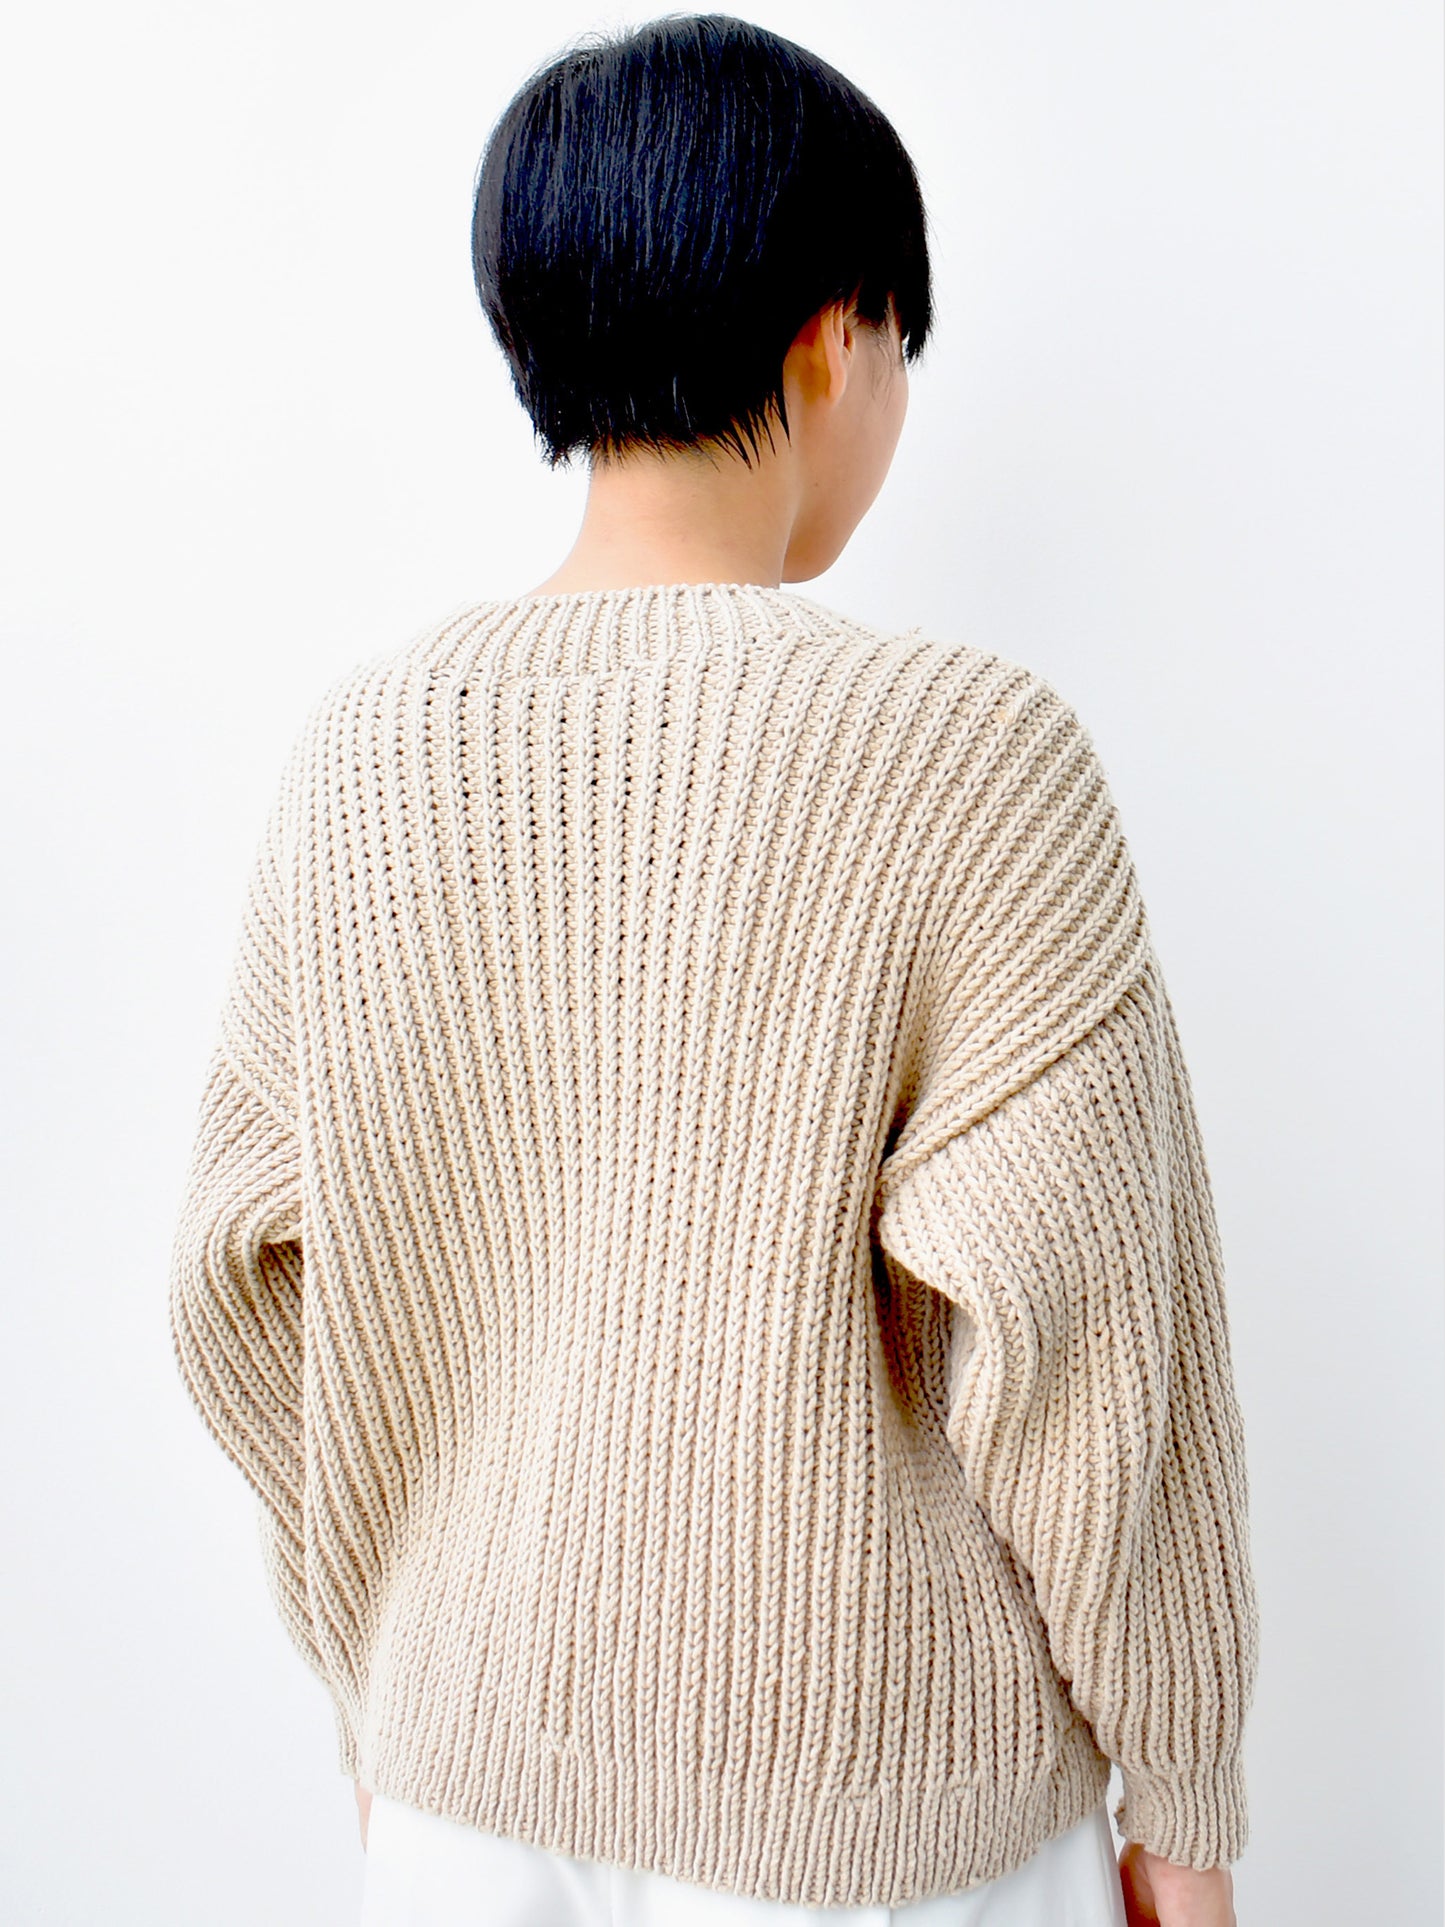 Sweater No.1 | Classic knitting sweater pattern